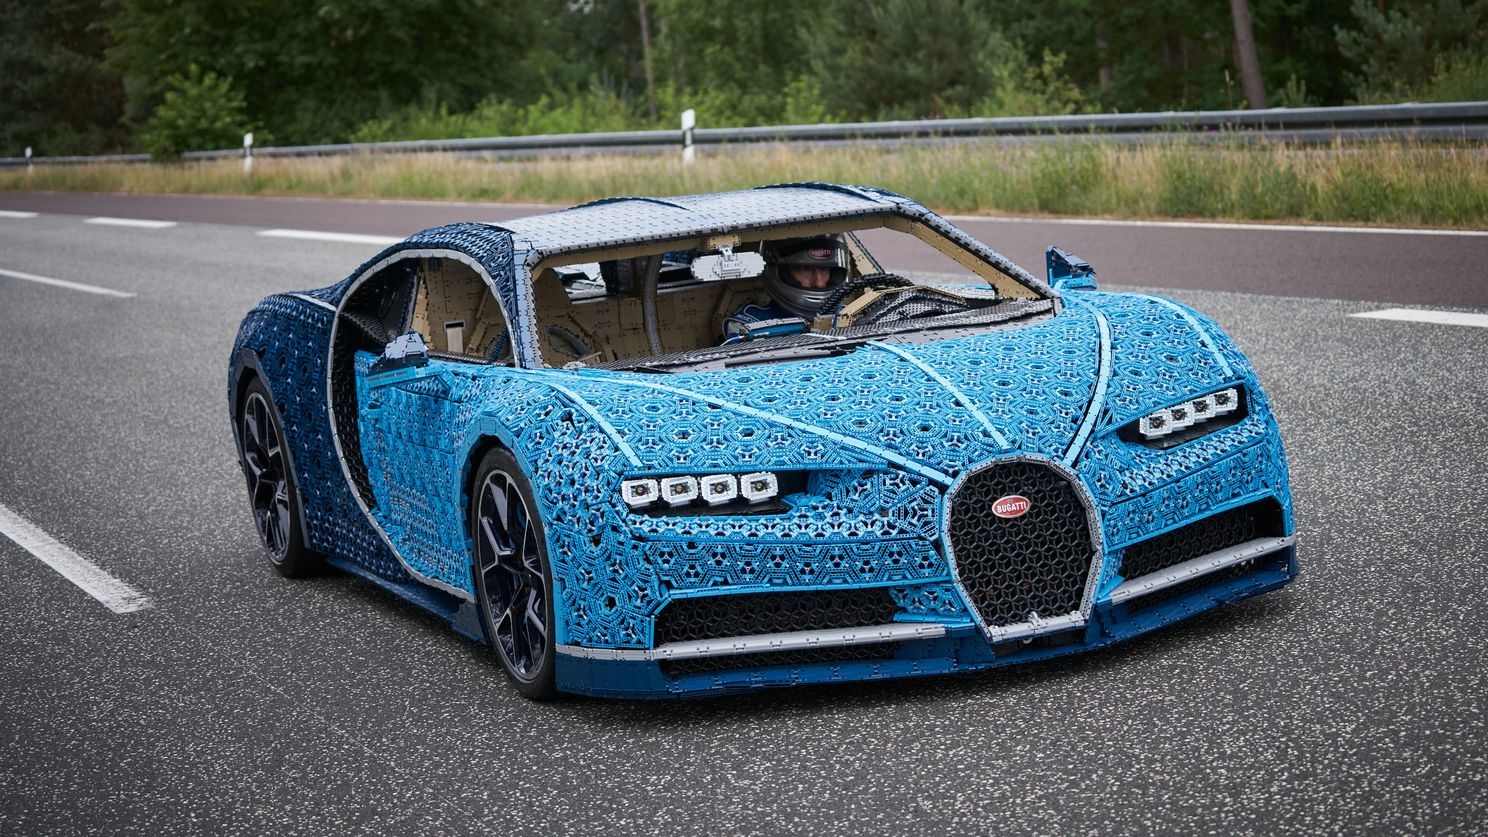 Húsz kilométer per órával száguld a Legóból épült Bugatti